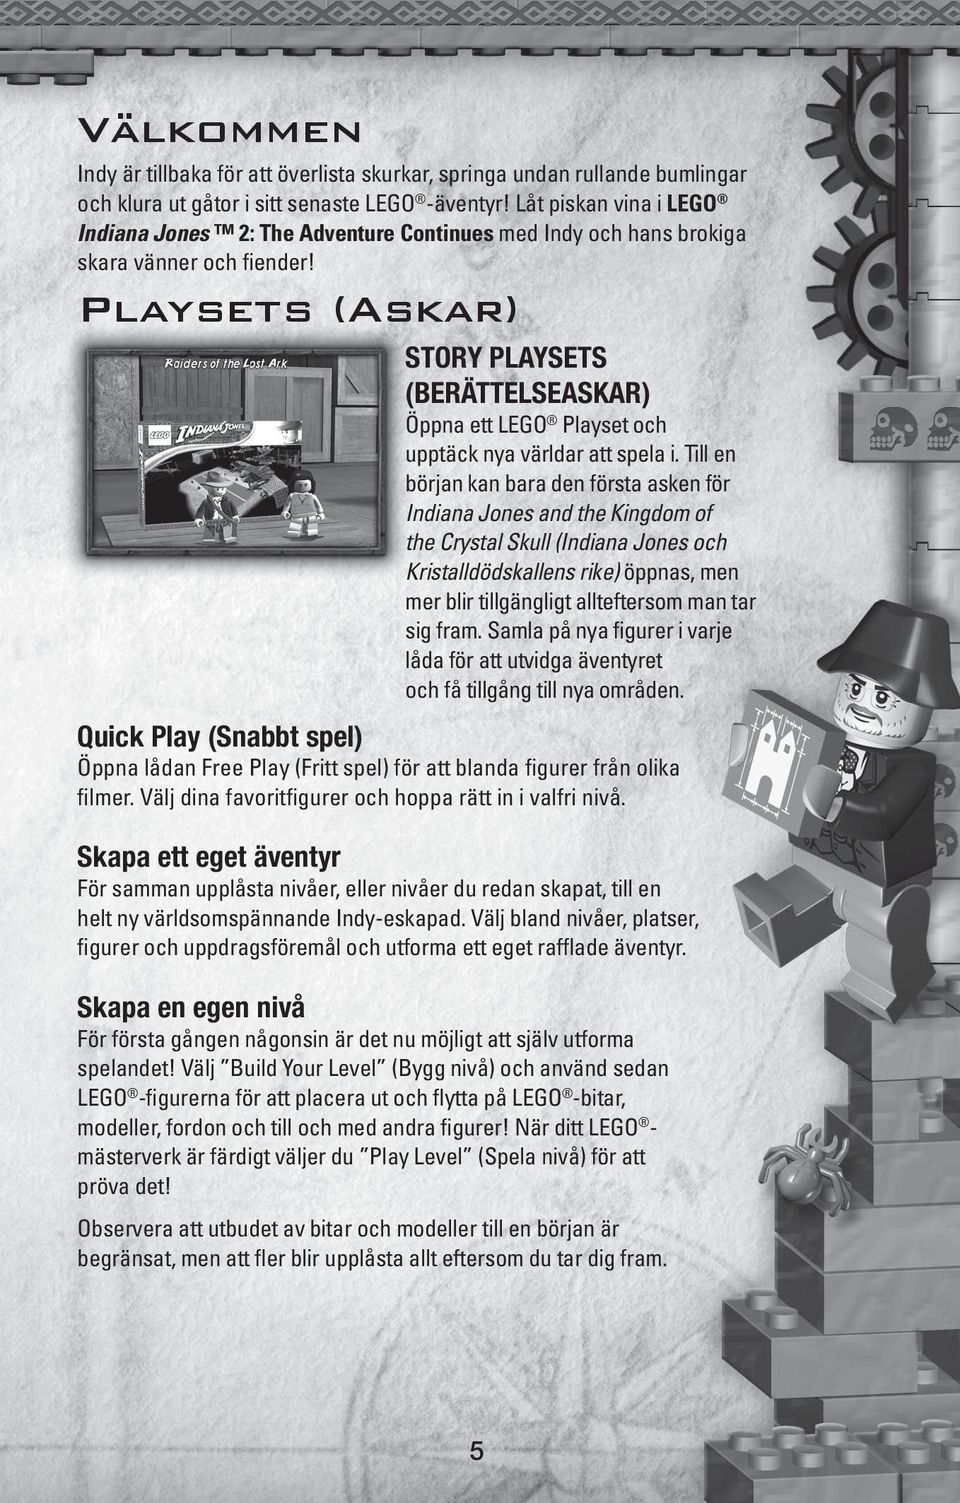 Playsets (Askar) STORY PLAYSETS (BERÄTTELSEASKAR) Öppna ett LEGO Playset och upptäck nya världar att spela i.